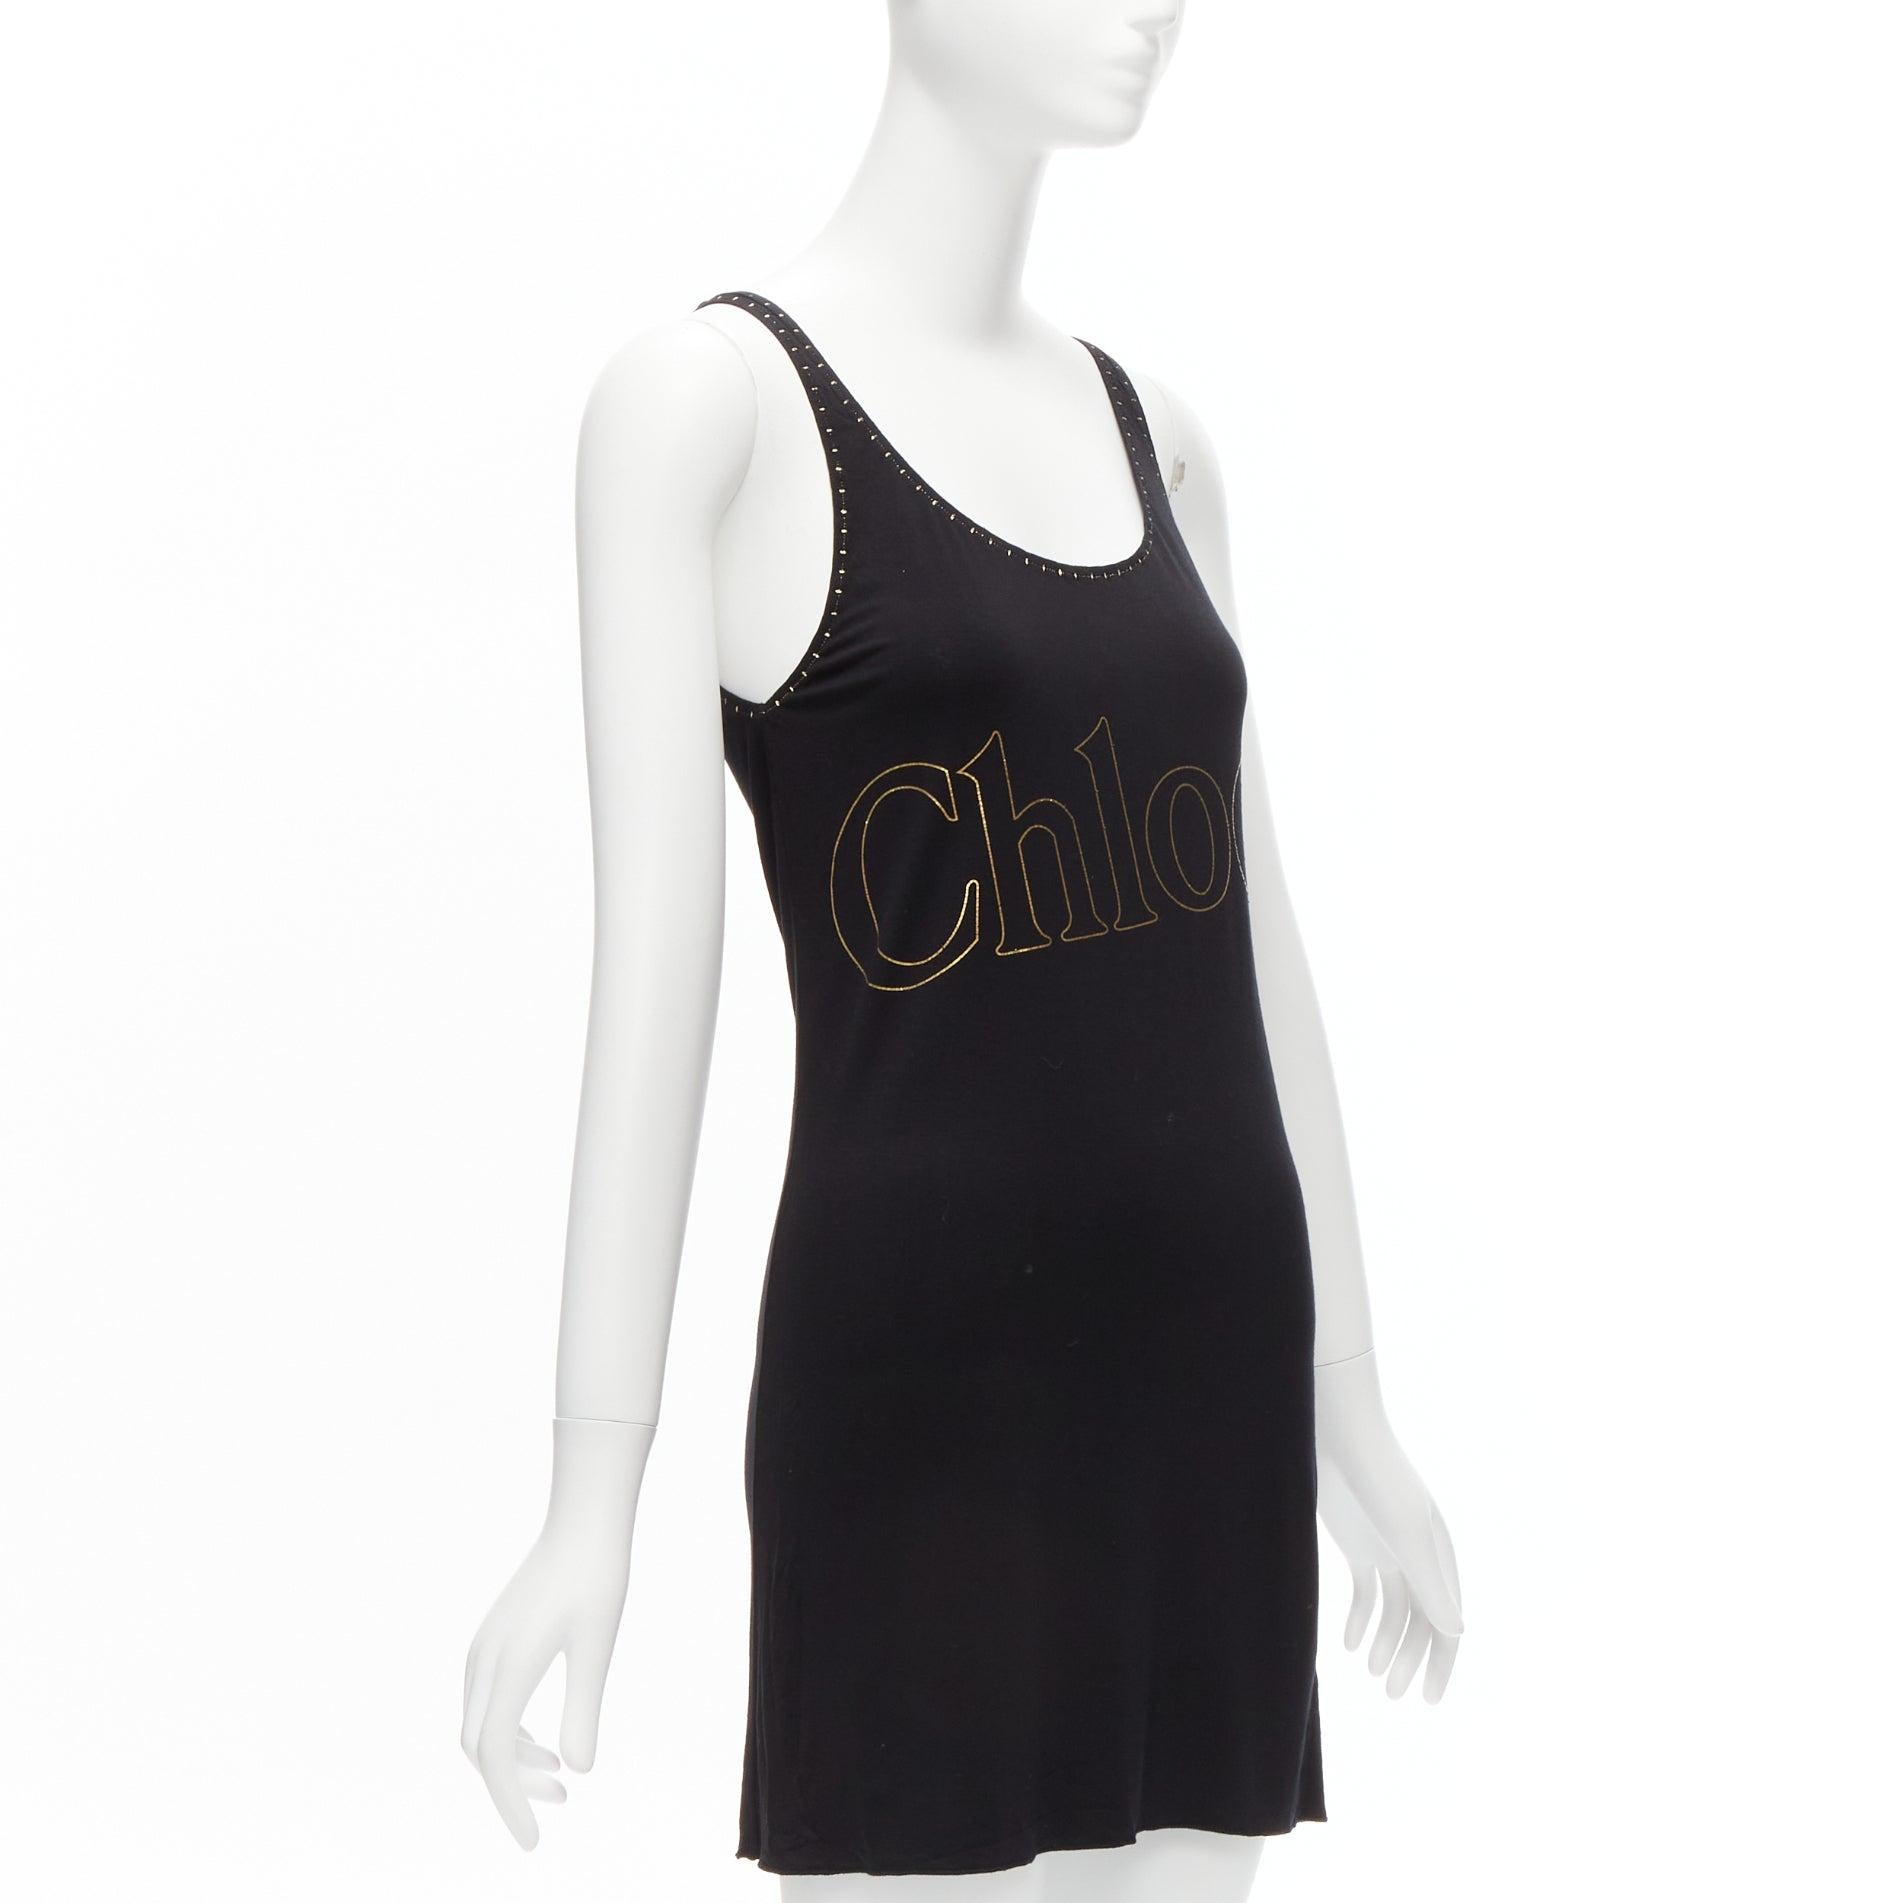 CHLOE Goldfolie Logo schwarz Steppstich Detail Rock chic Tank Top Kleid S (Schwarz) im Angebot